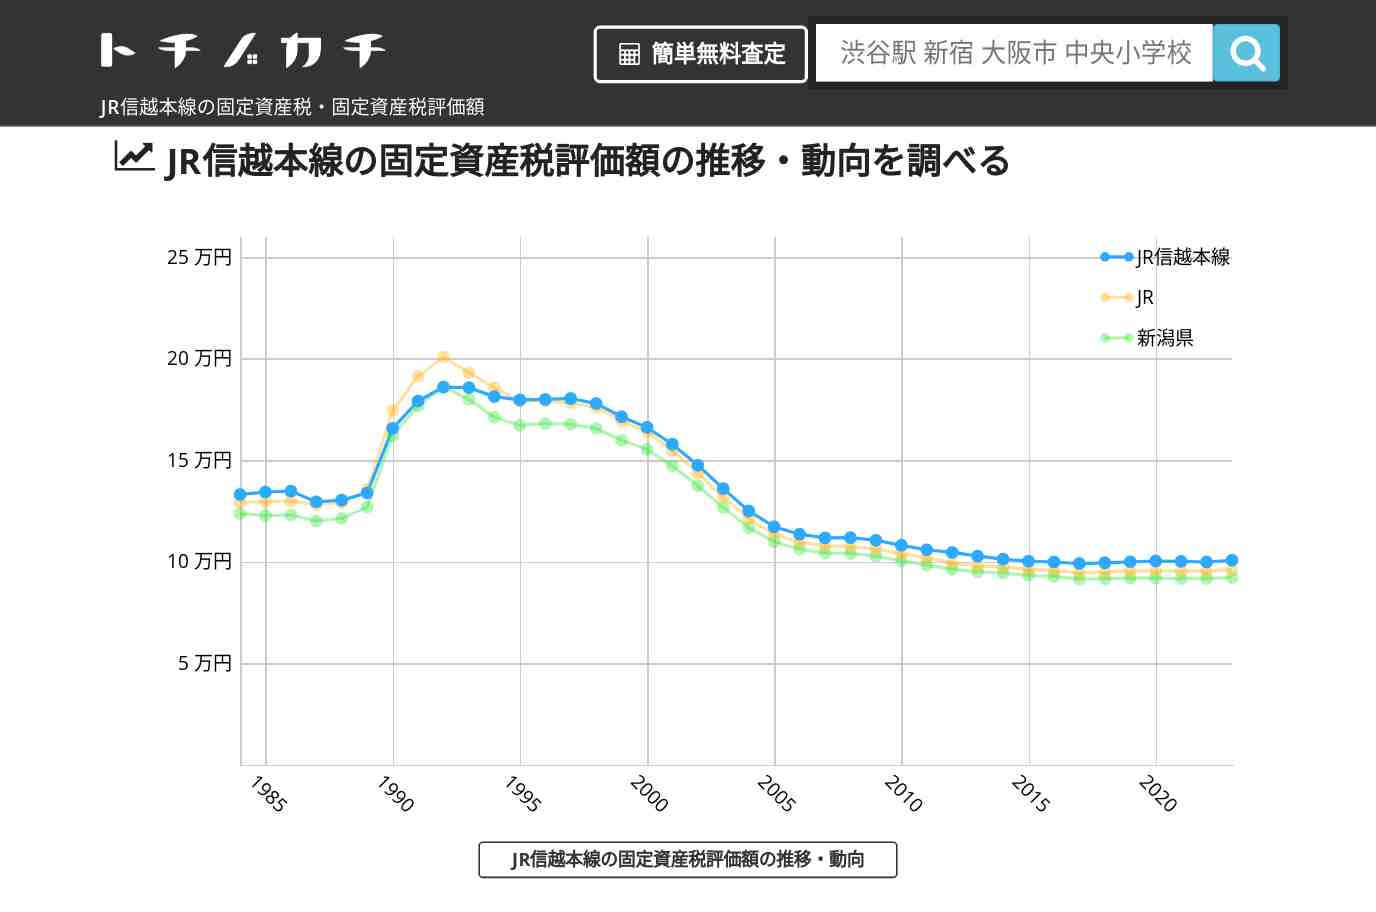 JR信越本線(JR)の固定資産税・固定資産税評価額 | トチノカチ